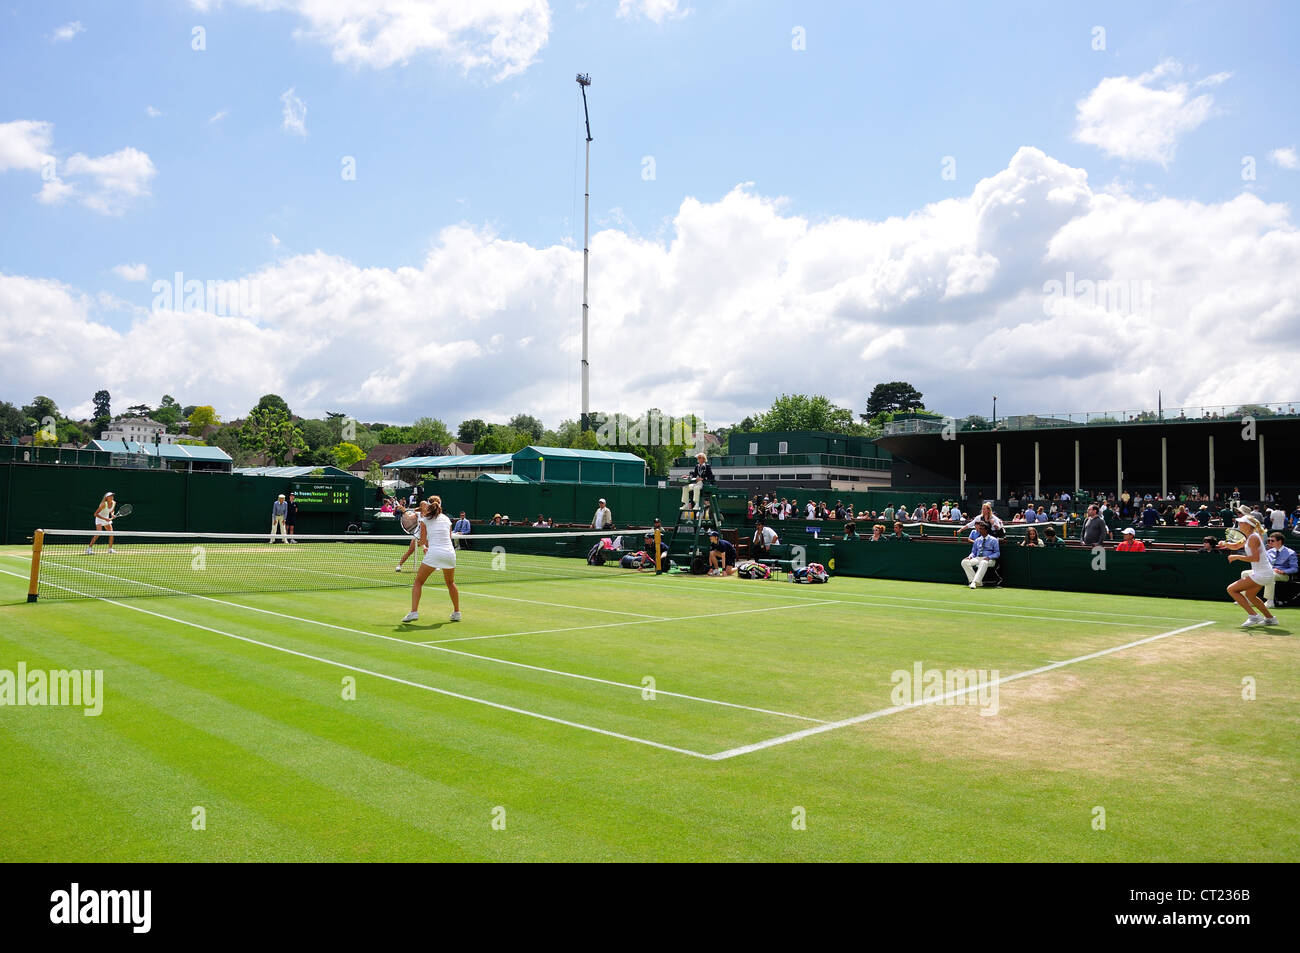 Match de la jeune fille sur l'extérieur d'un tribunal sur Championnats 2012, Wimbledon, Merton Borough, Greater London, Angleterre, Royaume-Uni Banque D'Images